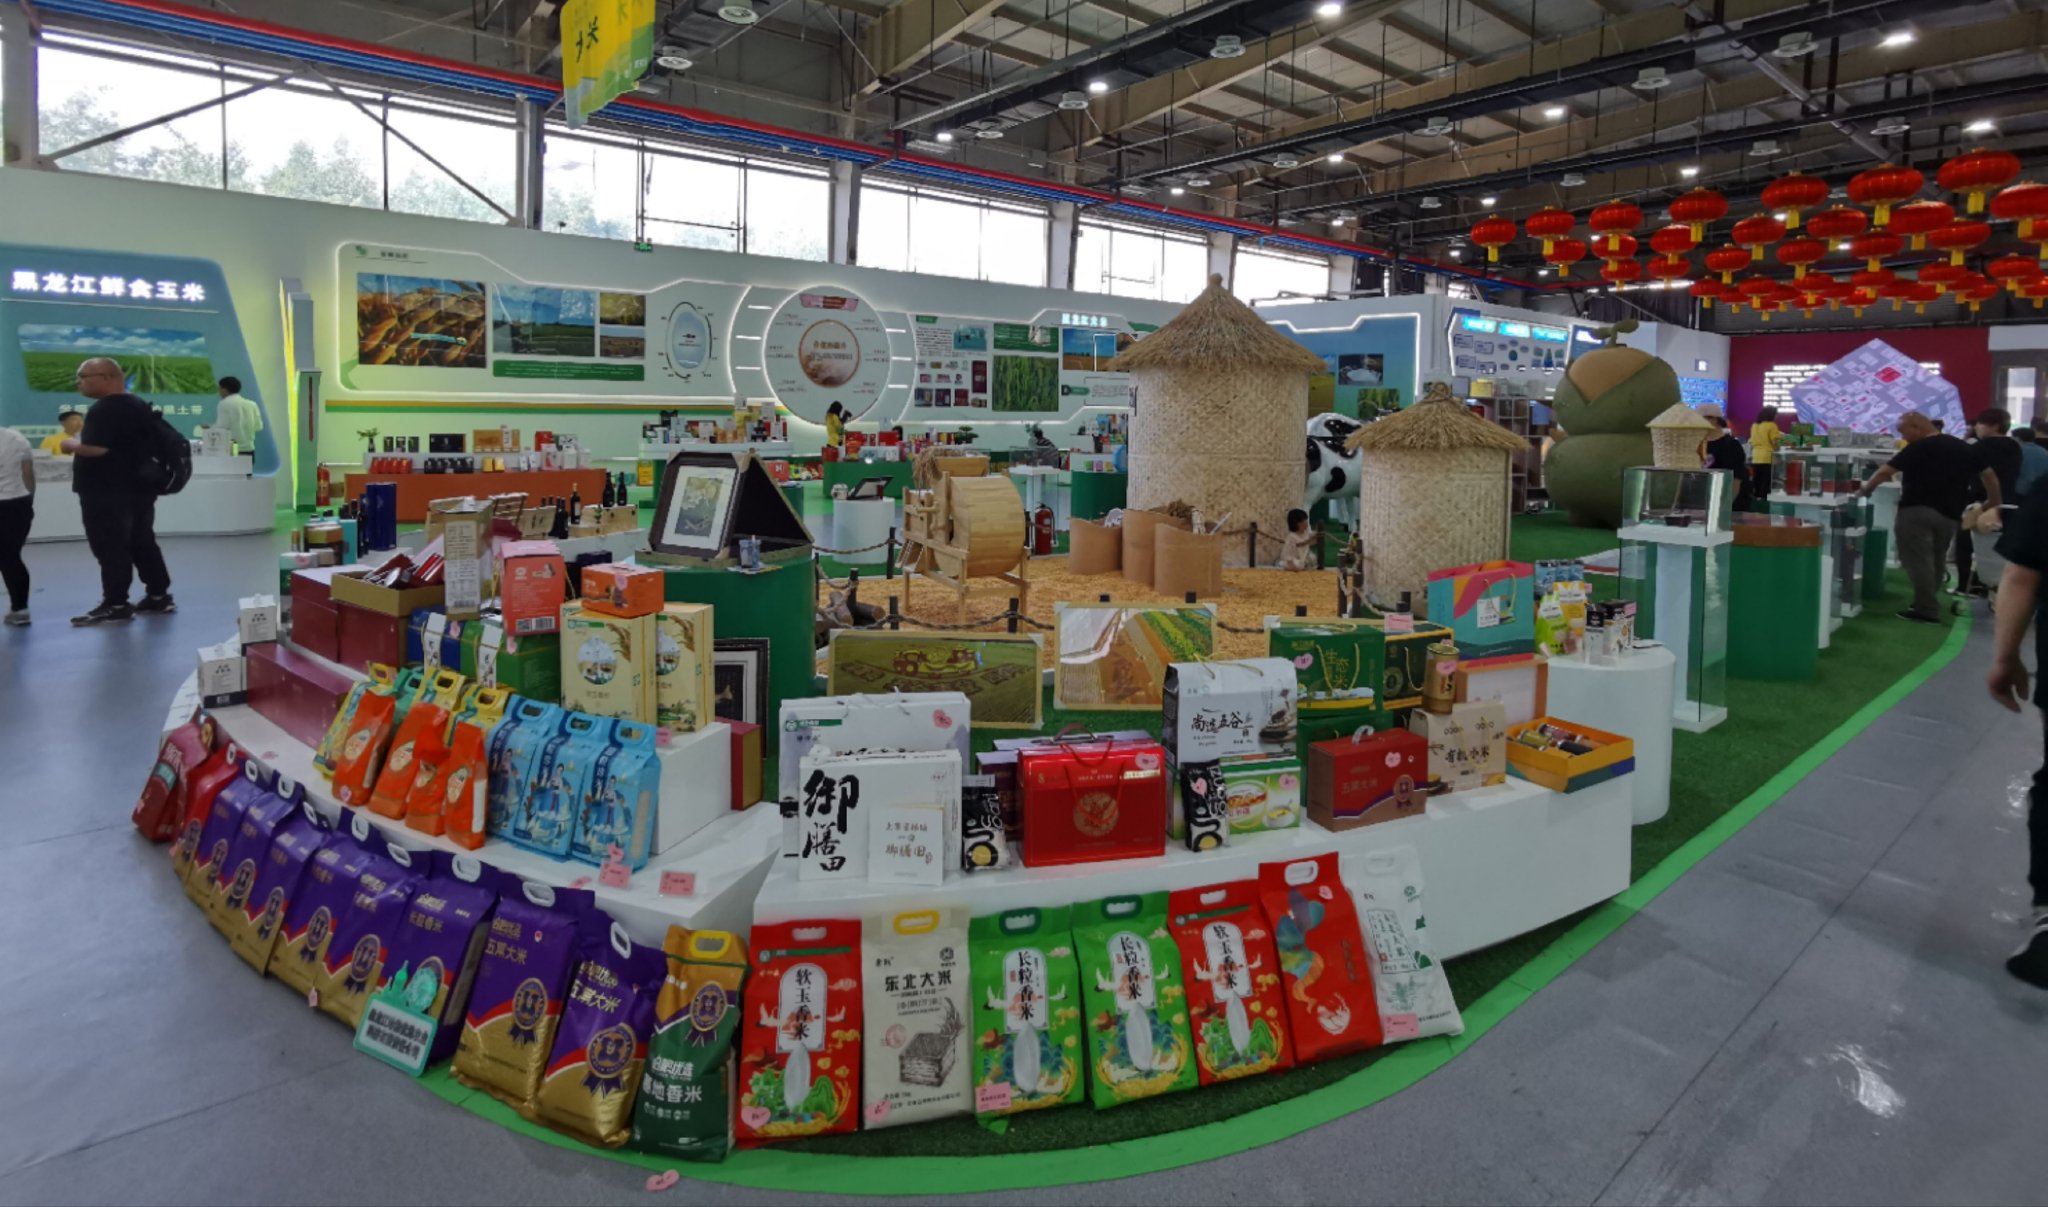 黑龙江省农投集团,黑龙江省供销集团的730家1793款特色优质农产品进行